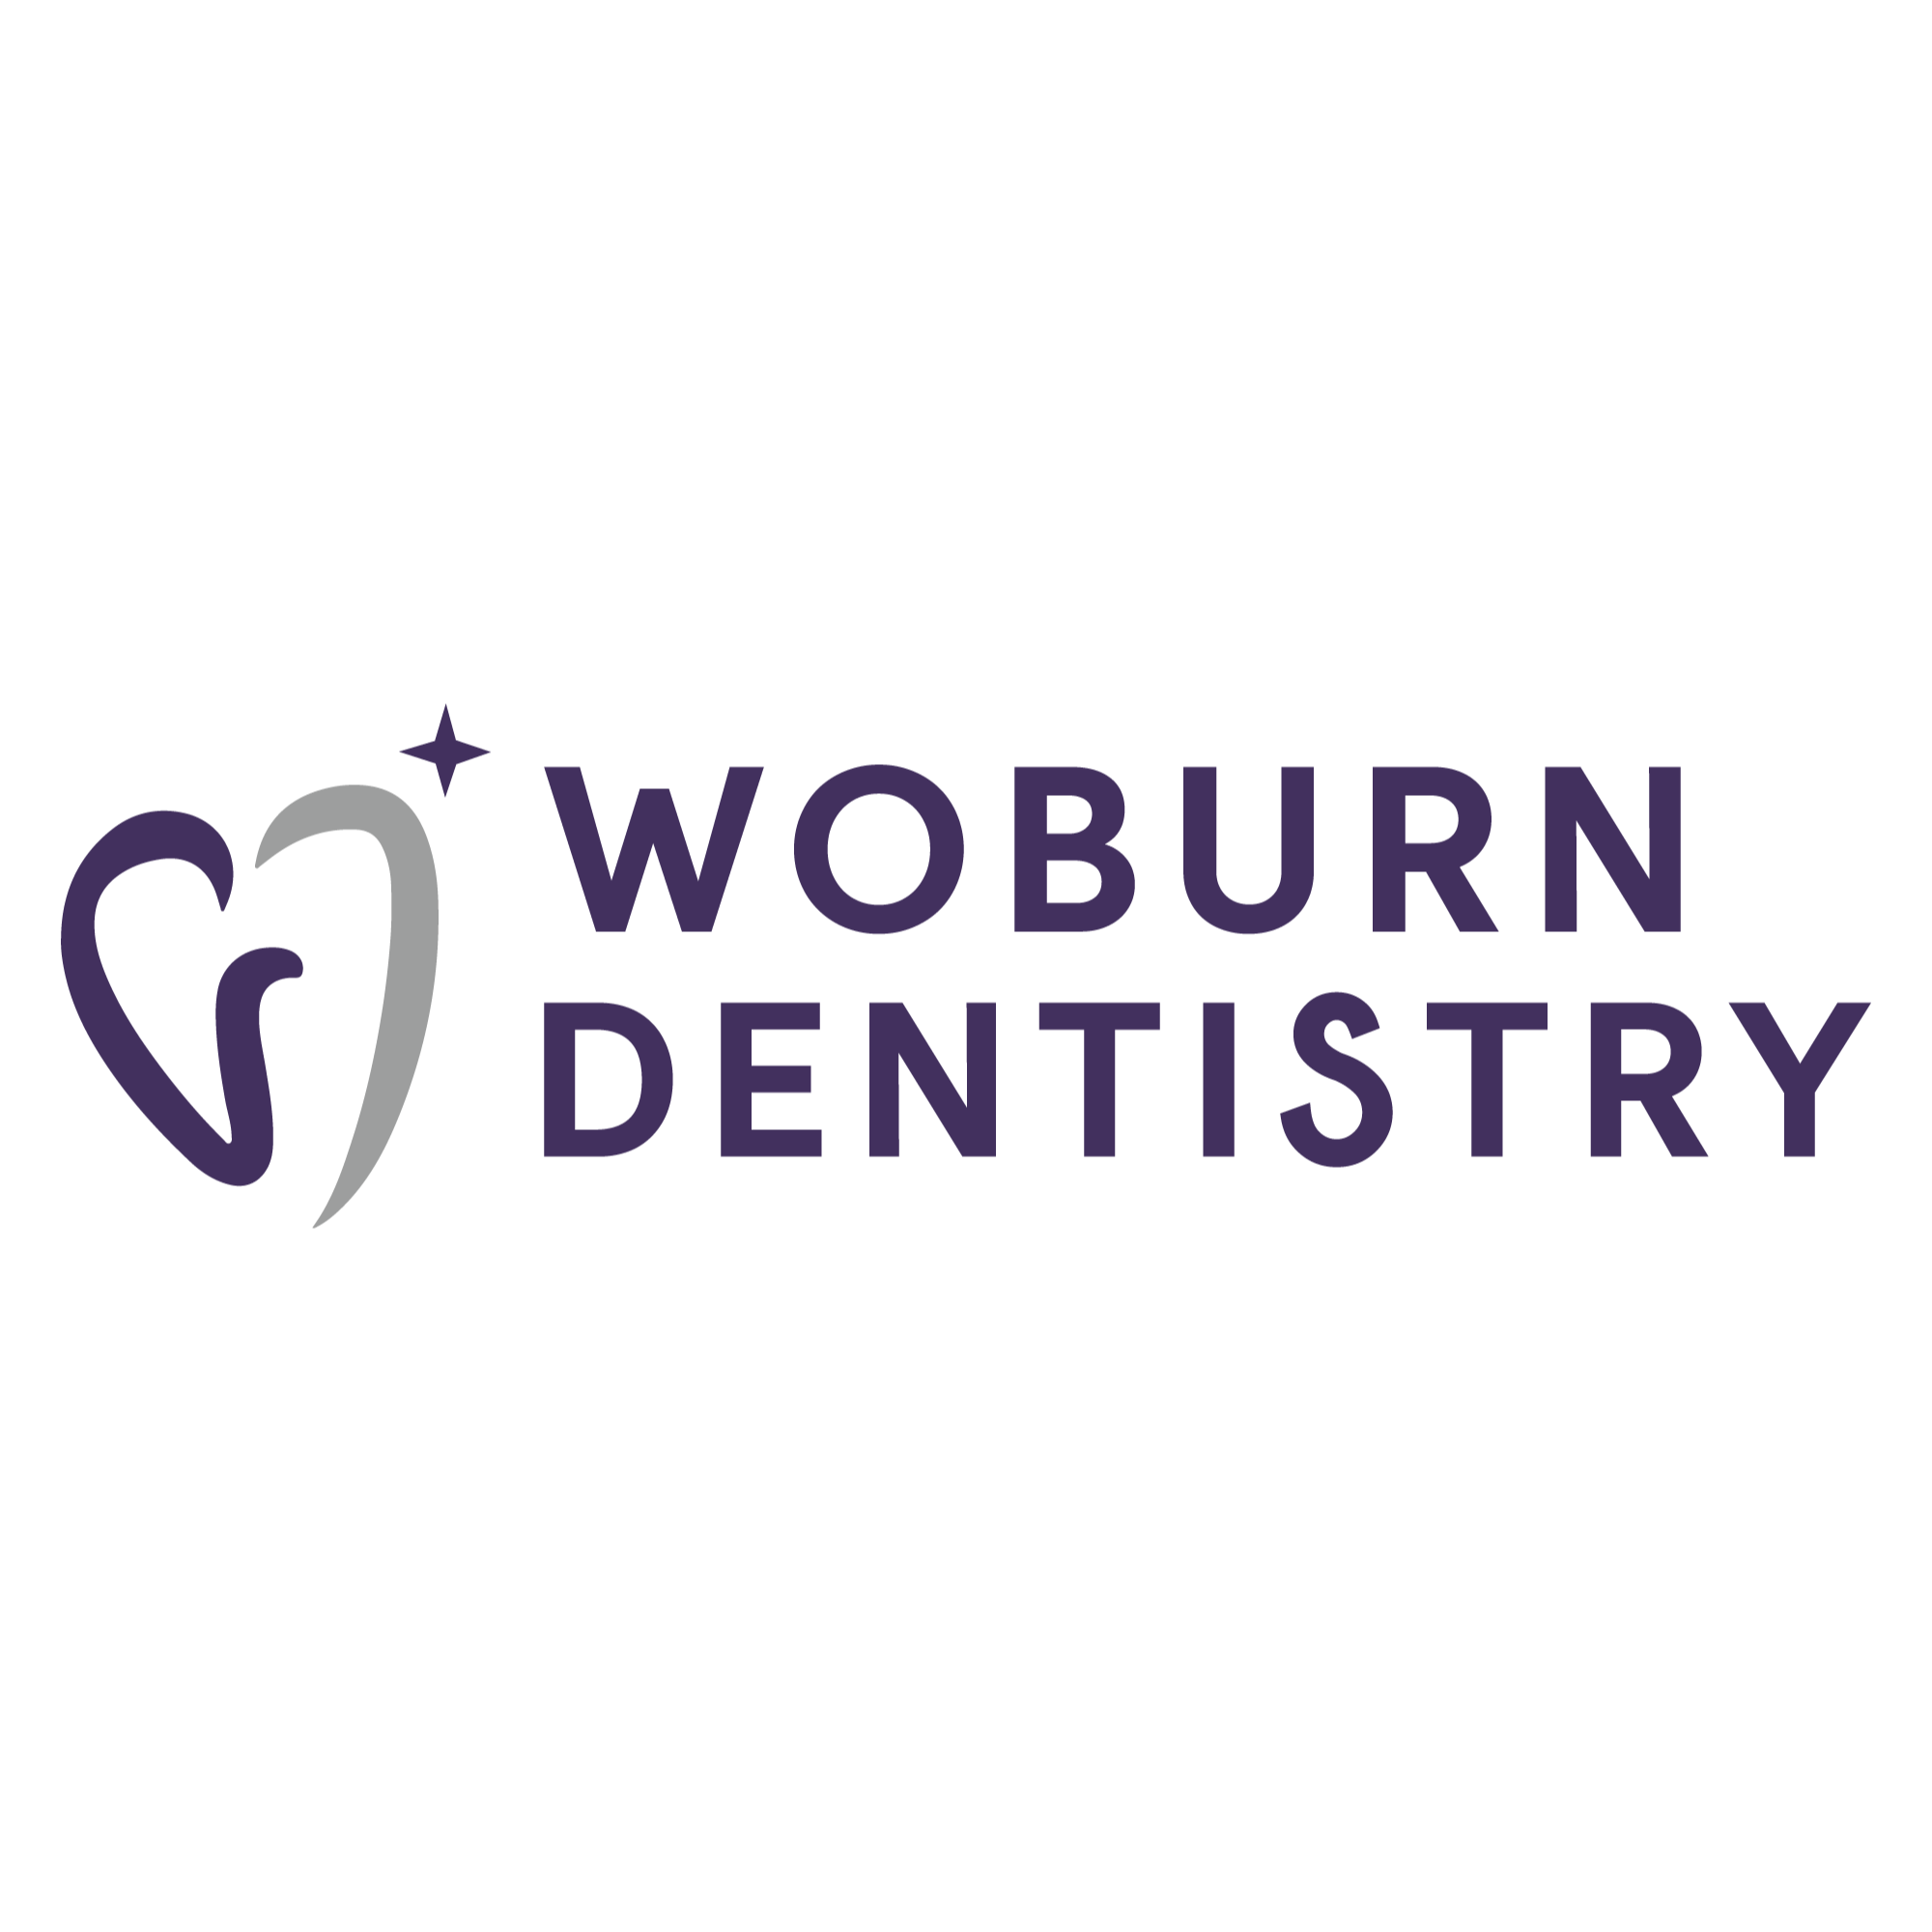 Woburn Dentistry - Woburn, MA 01801 - (781)604-3999 | ShowMeLocal.com